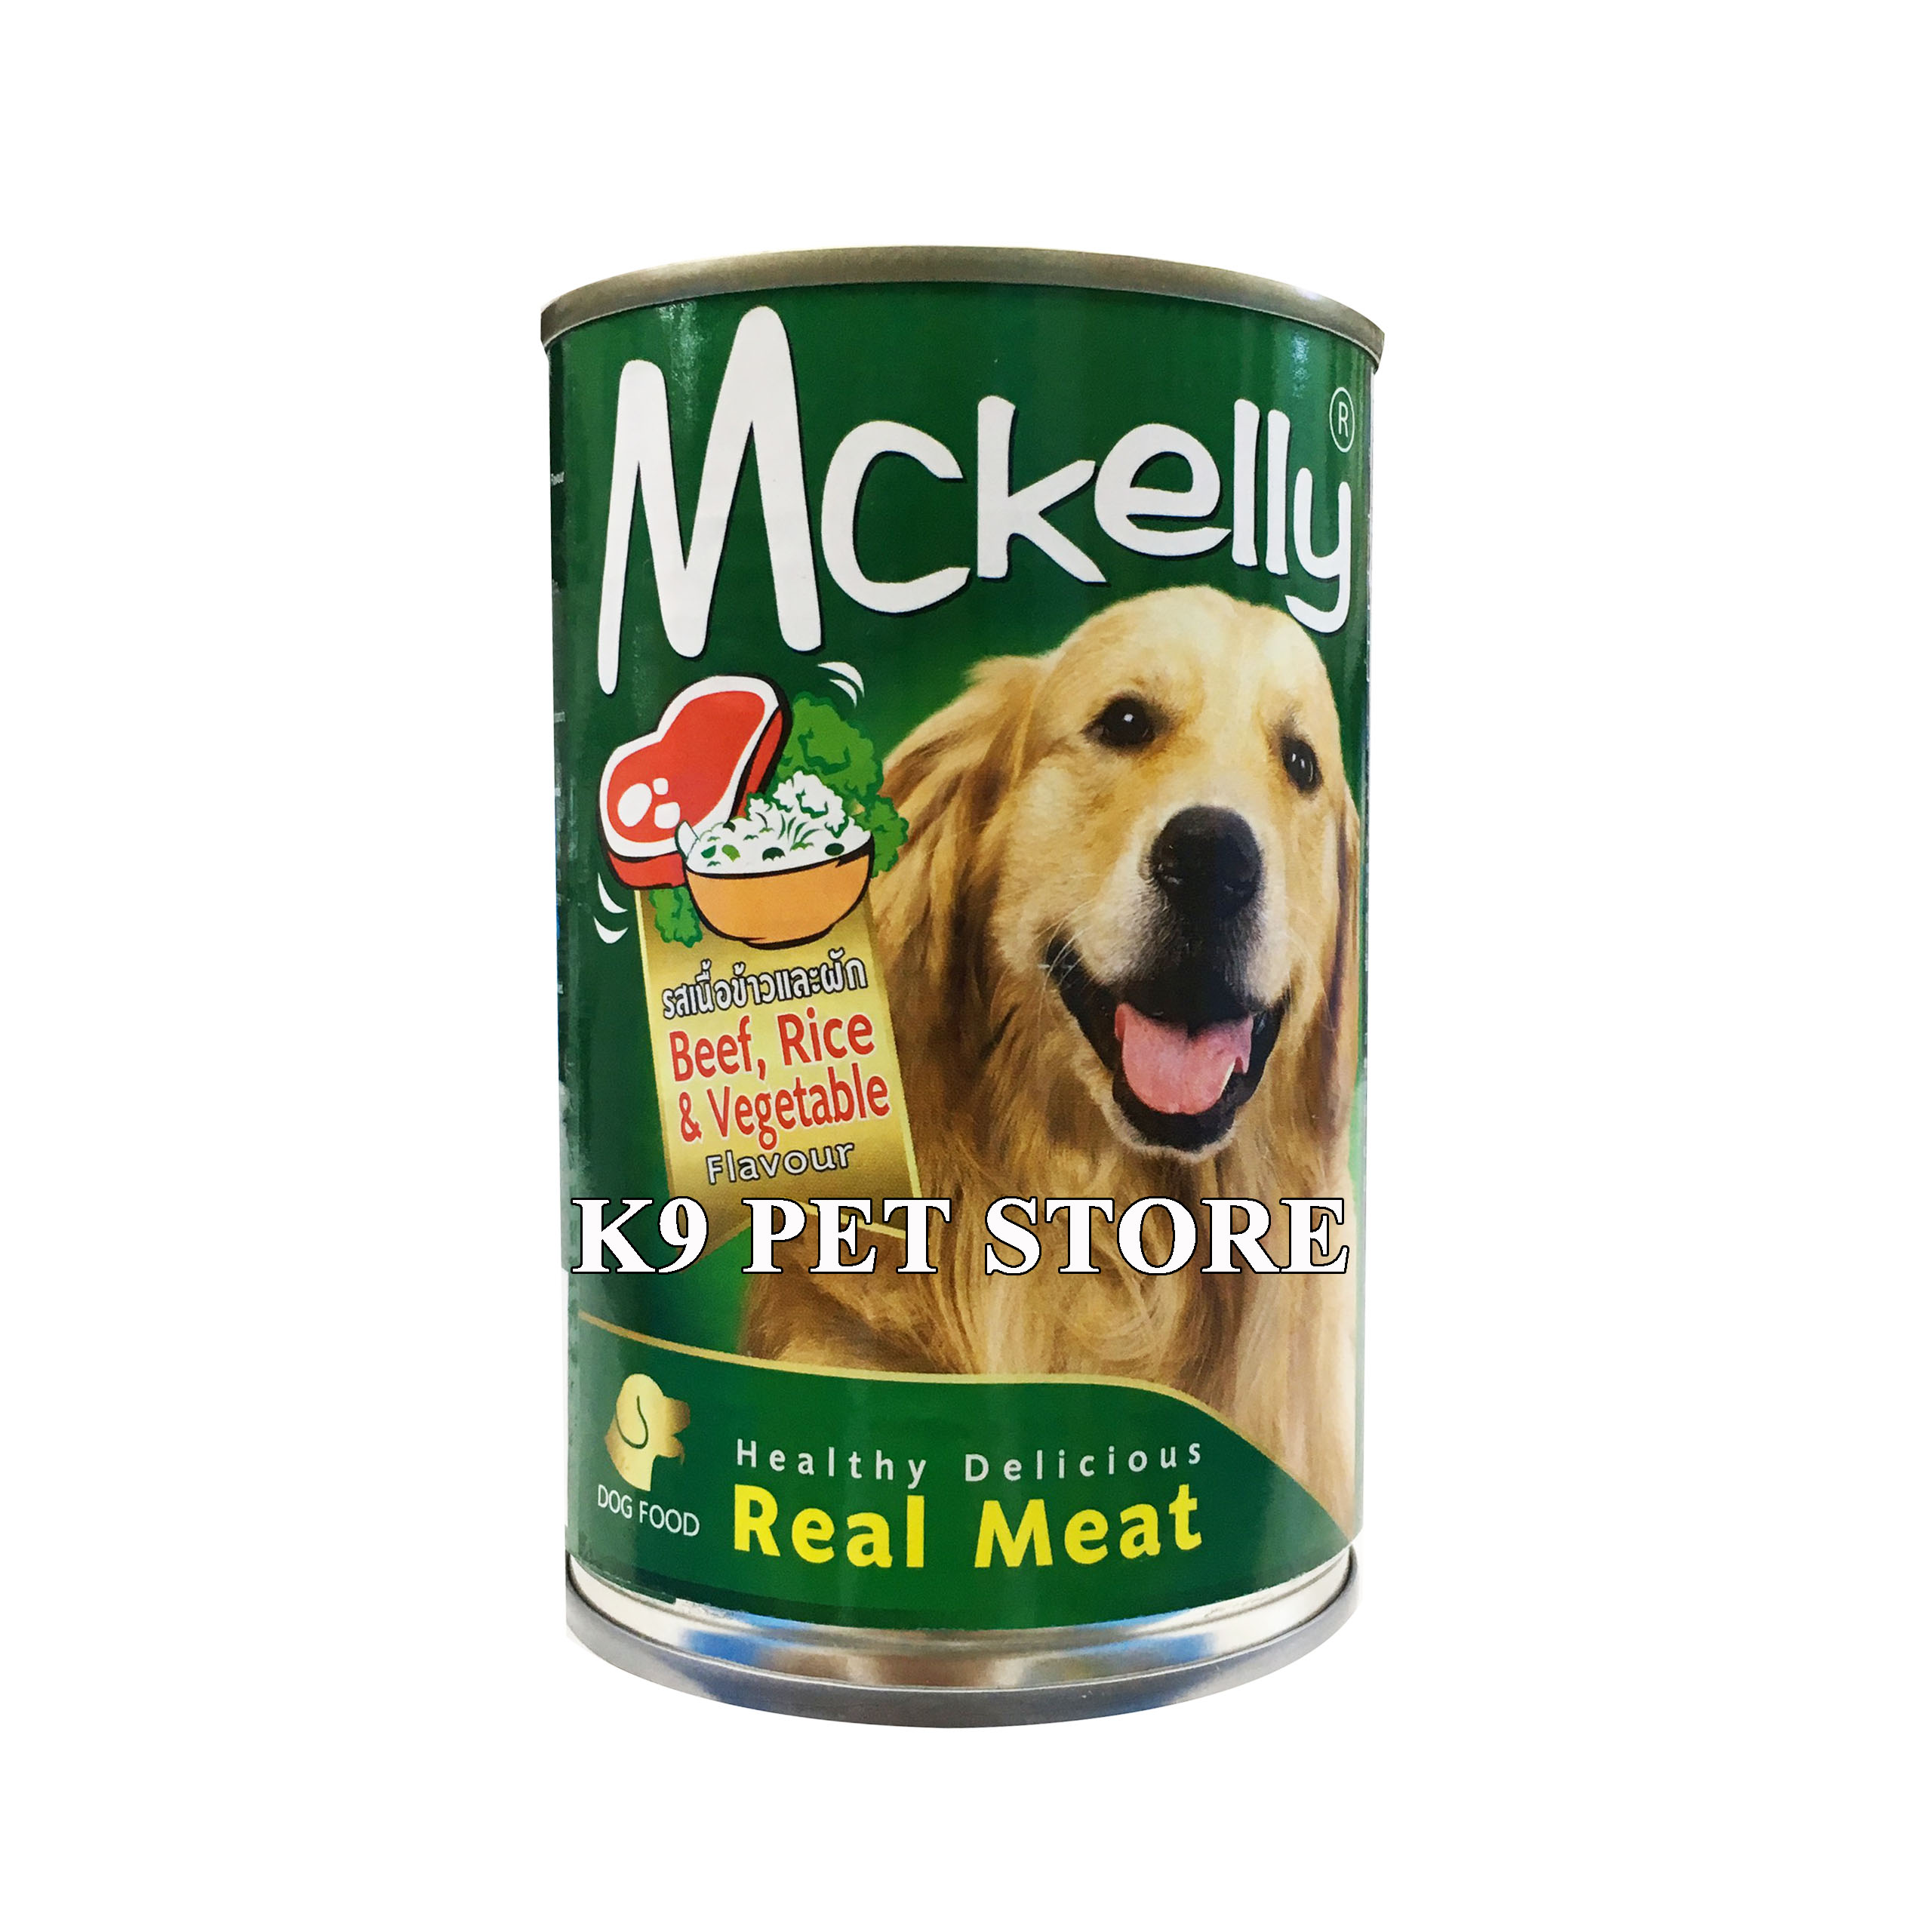 Pate lon cao cấp cho chó Mckelly vị Bò, Gạo và Rau 400g